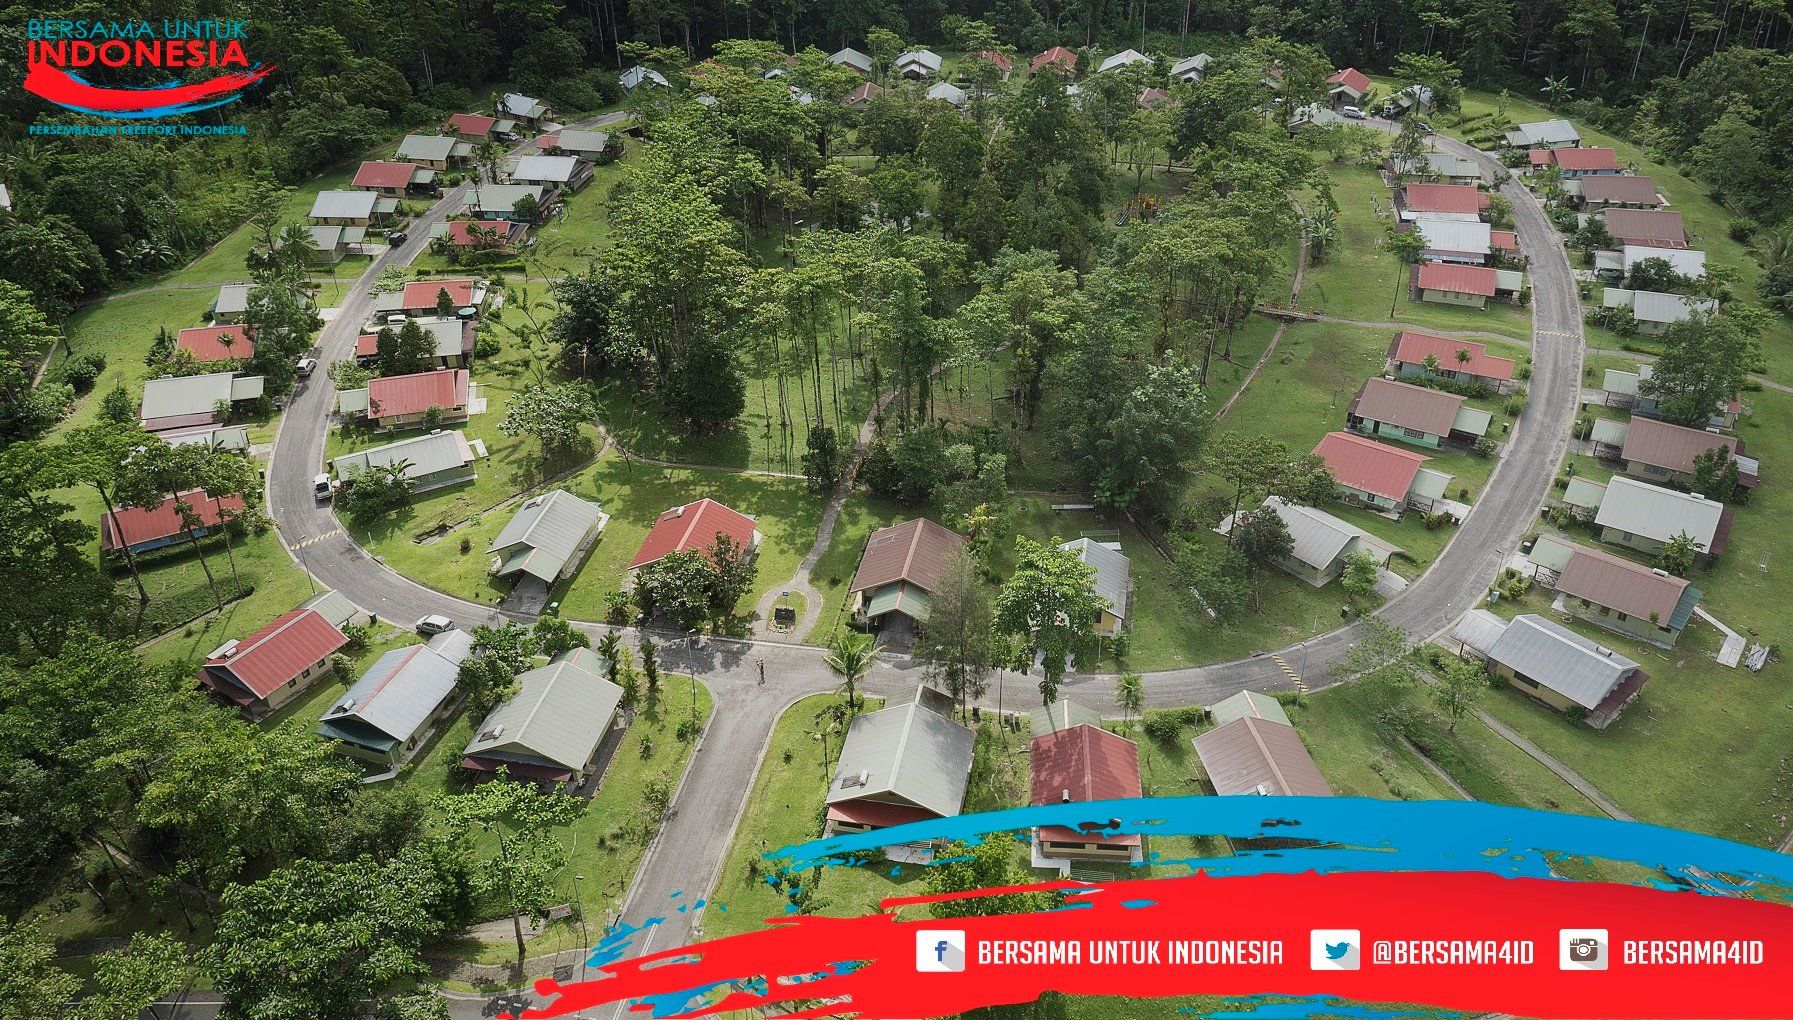  Kuala Kencana, kota modern yg berada di belantara Papua. Secara administratif kota ini termasuk distrik di Kabupaten Mimika, dengan ibukotanya Timika.